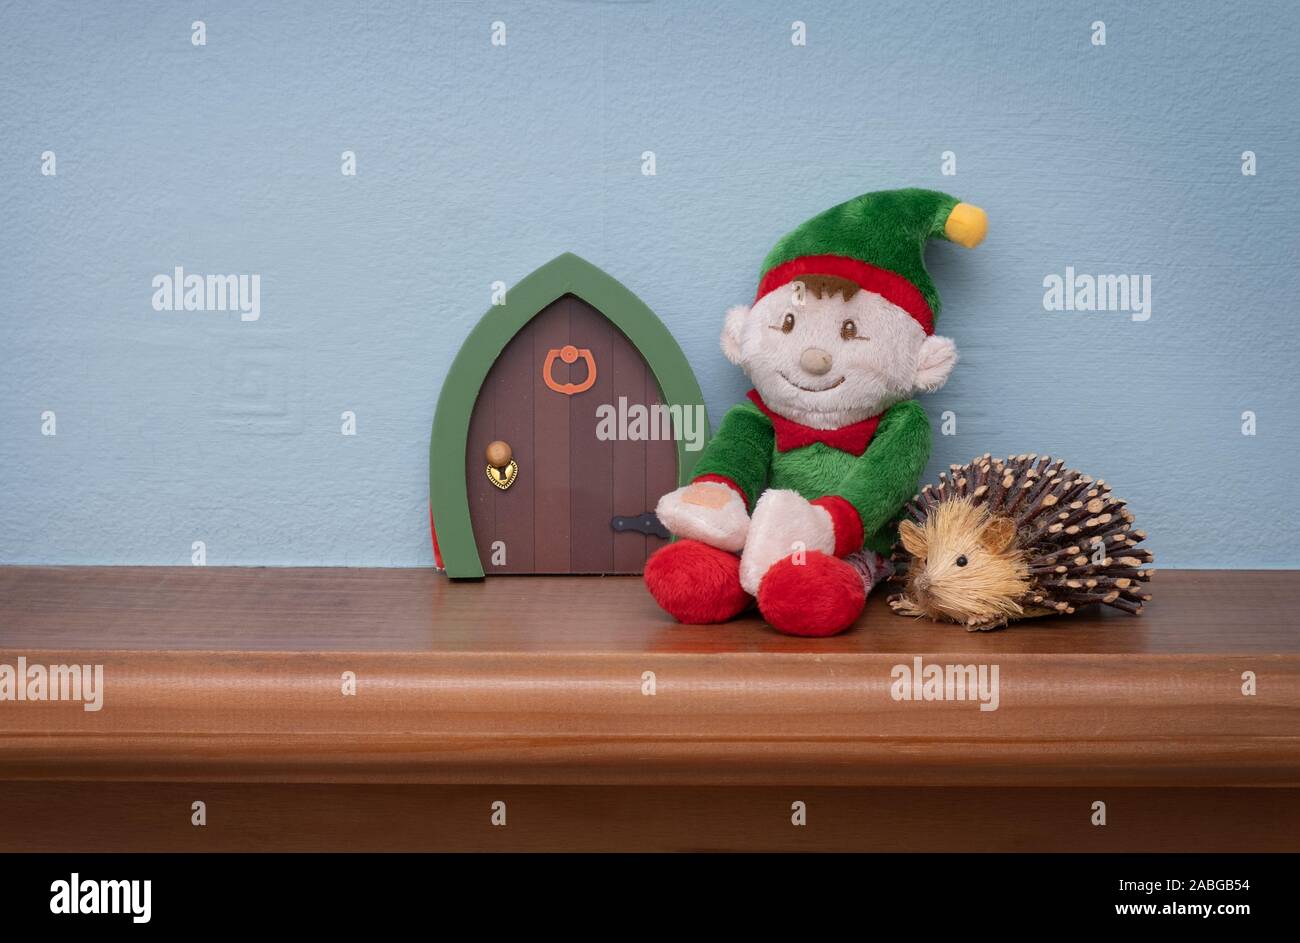 Weihnachten Elf nebenan mit Toy hedgehog auf elf Sitzen. Süße Tradition der Senden Santa's elf auf Kinder zu kurz vor Weihnachten prüfen. Stockfoto